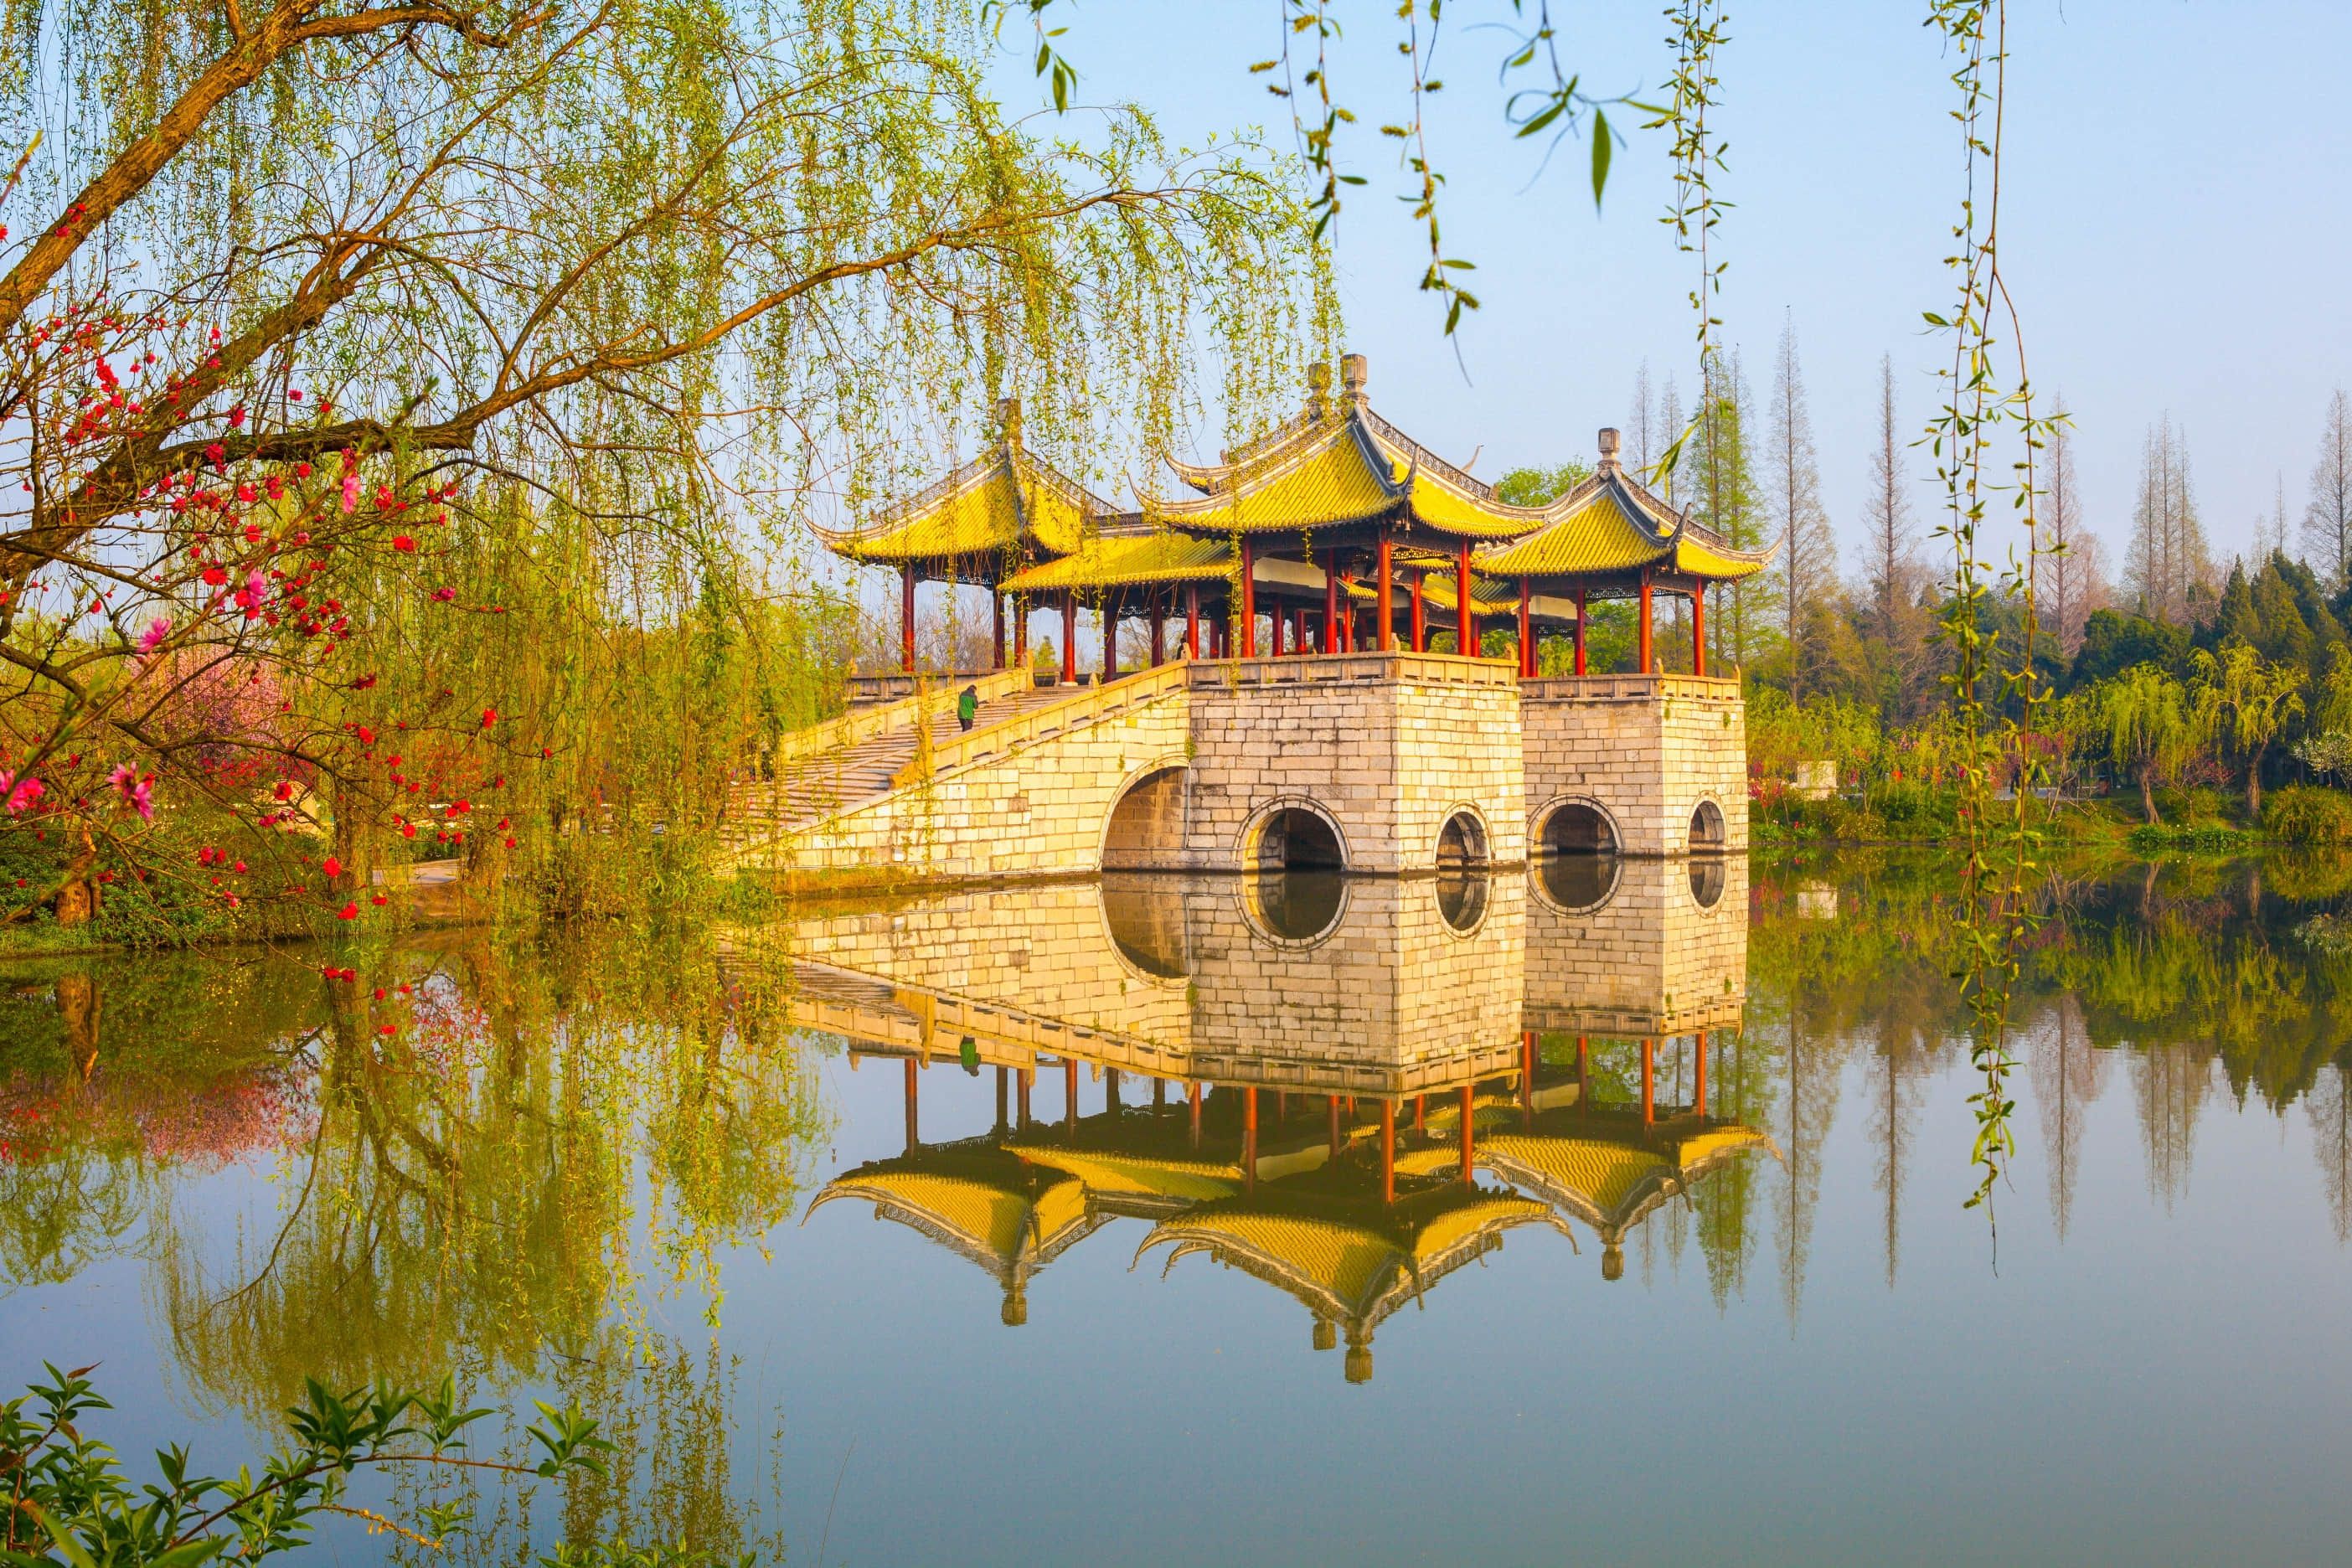 探秘扬州唯一5a景区,堪称国内绝美旅行秘境